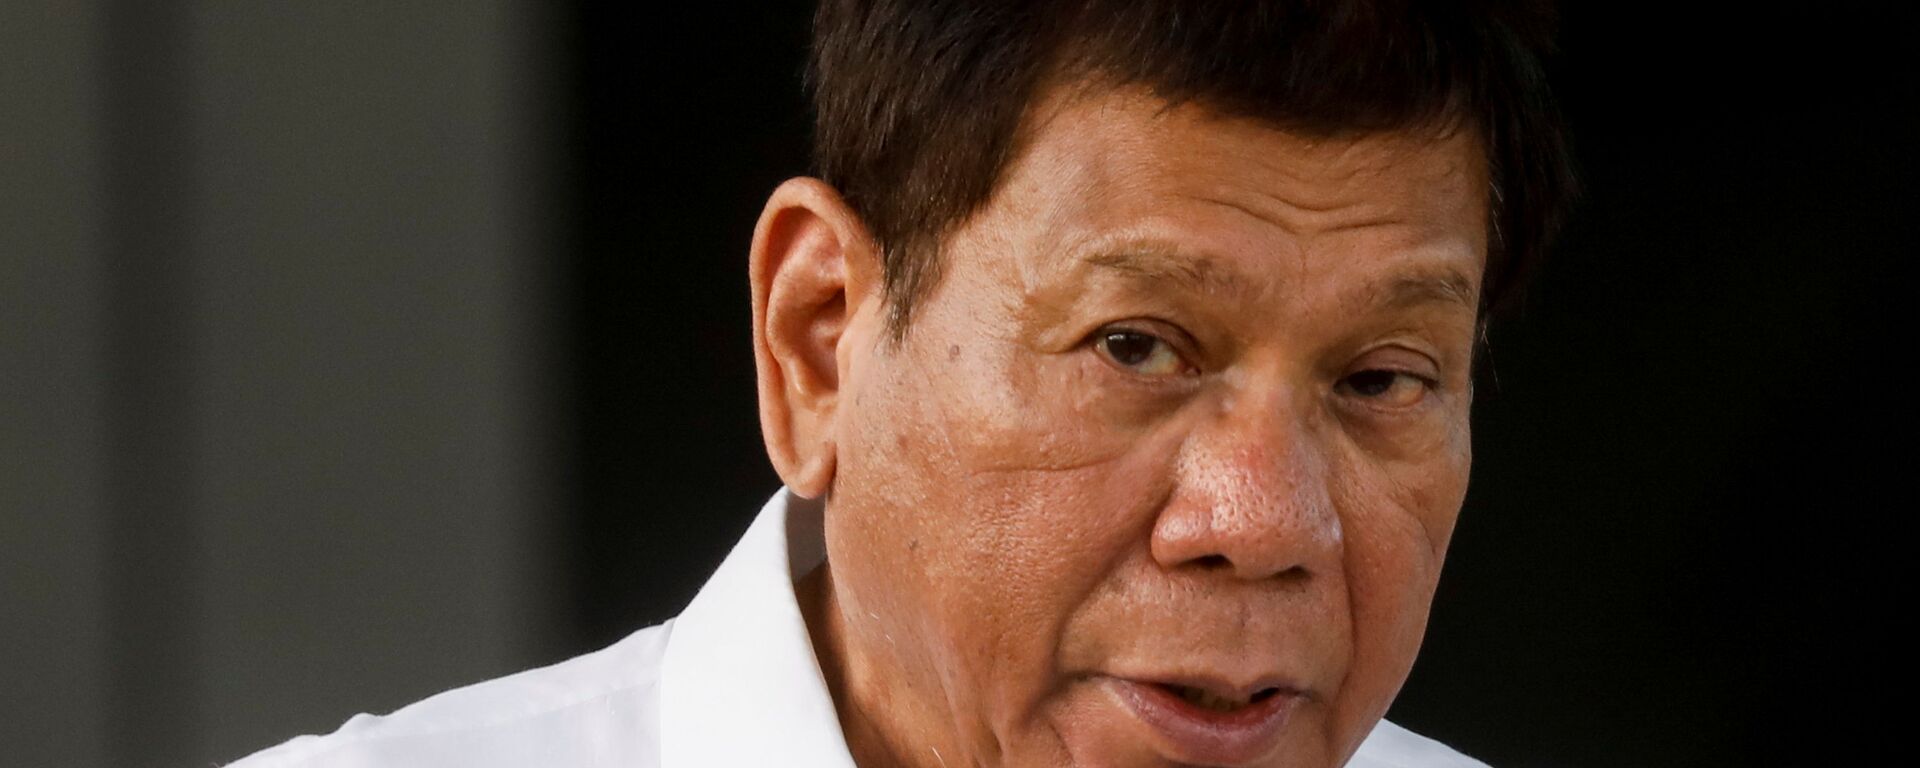 Tổng thống Philippines Rodrigo Duterte phát biểu trong buổi lễ đưa vắc xin COVID-19 đầu tiên đến đất nước, tại Căn cứ Không quân Villamor ở Pasay, Metro Manila, Philippines, ngày 28 tháng 2 năm 2021 - Sputnik Việt Nam, 1920, 08.11.2021